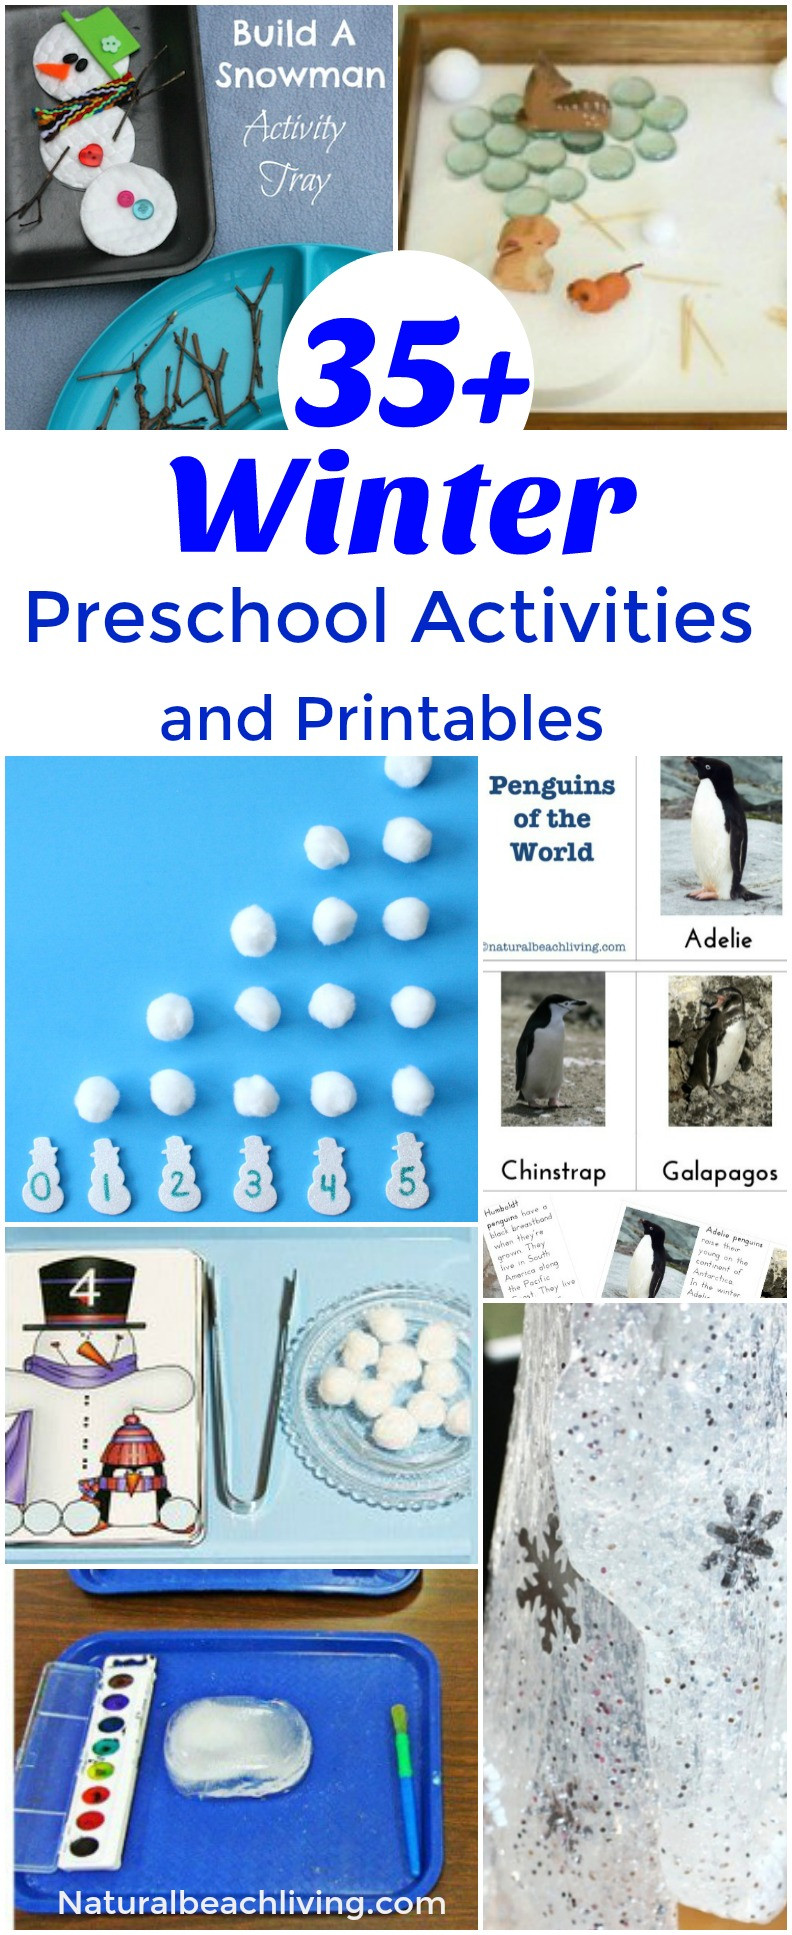 Winter Themed Activities For Preschoolers
 35 Winter Preschool Activities and Free Printables